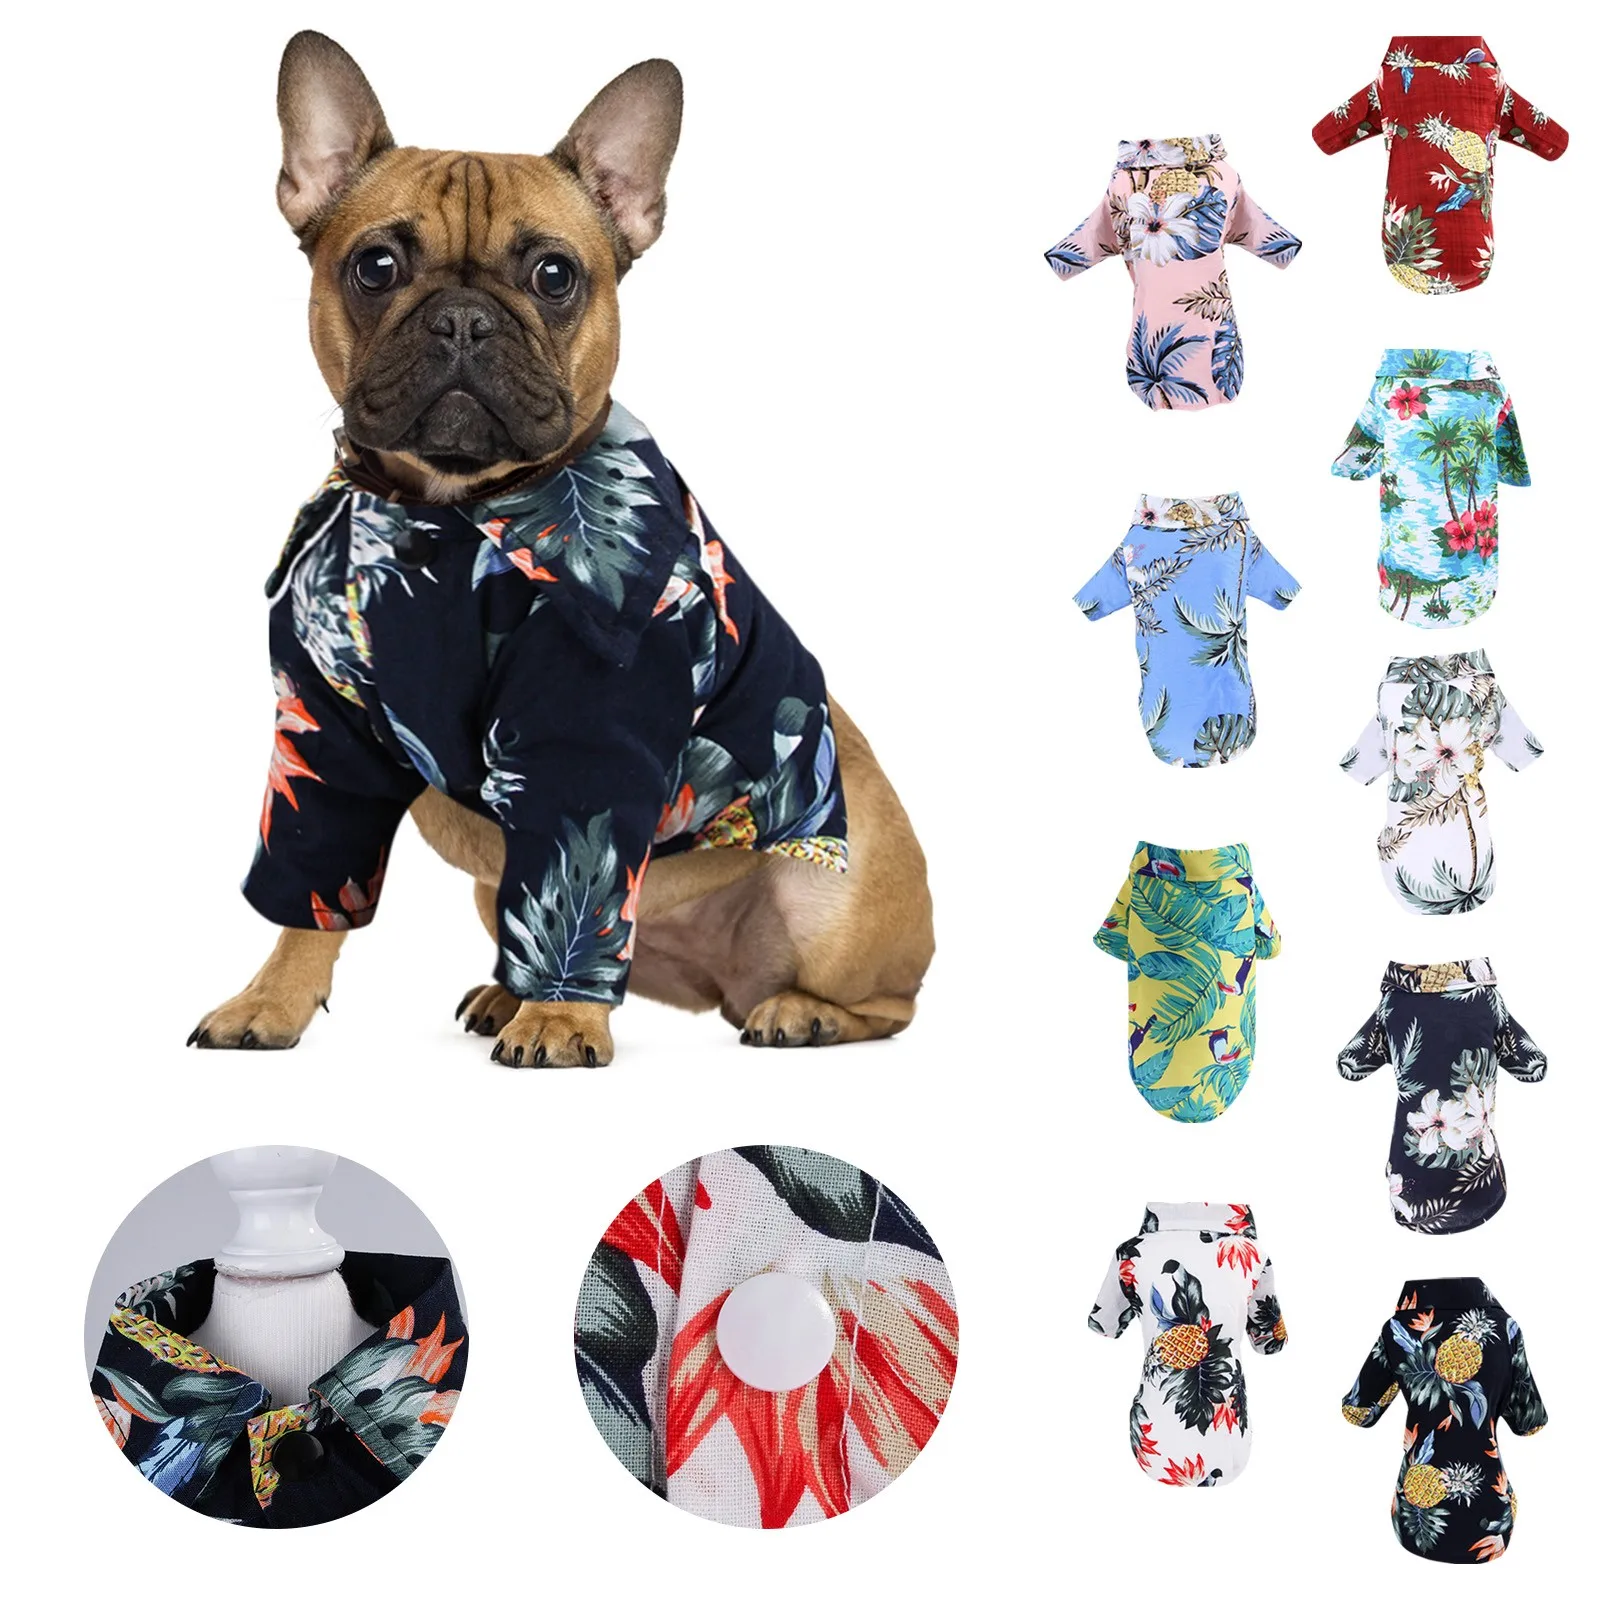 

Одежда Для маленьких, средних и больших Собак, гавайская рубашка, жилет Для щенка, футболка Для Собак, летняя Одежда с принтом Для домашних п...